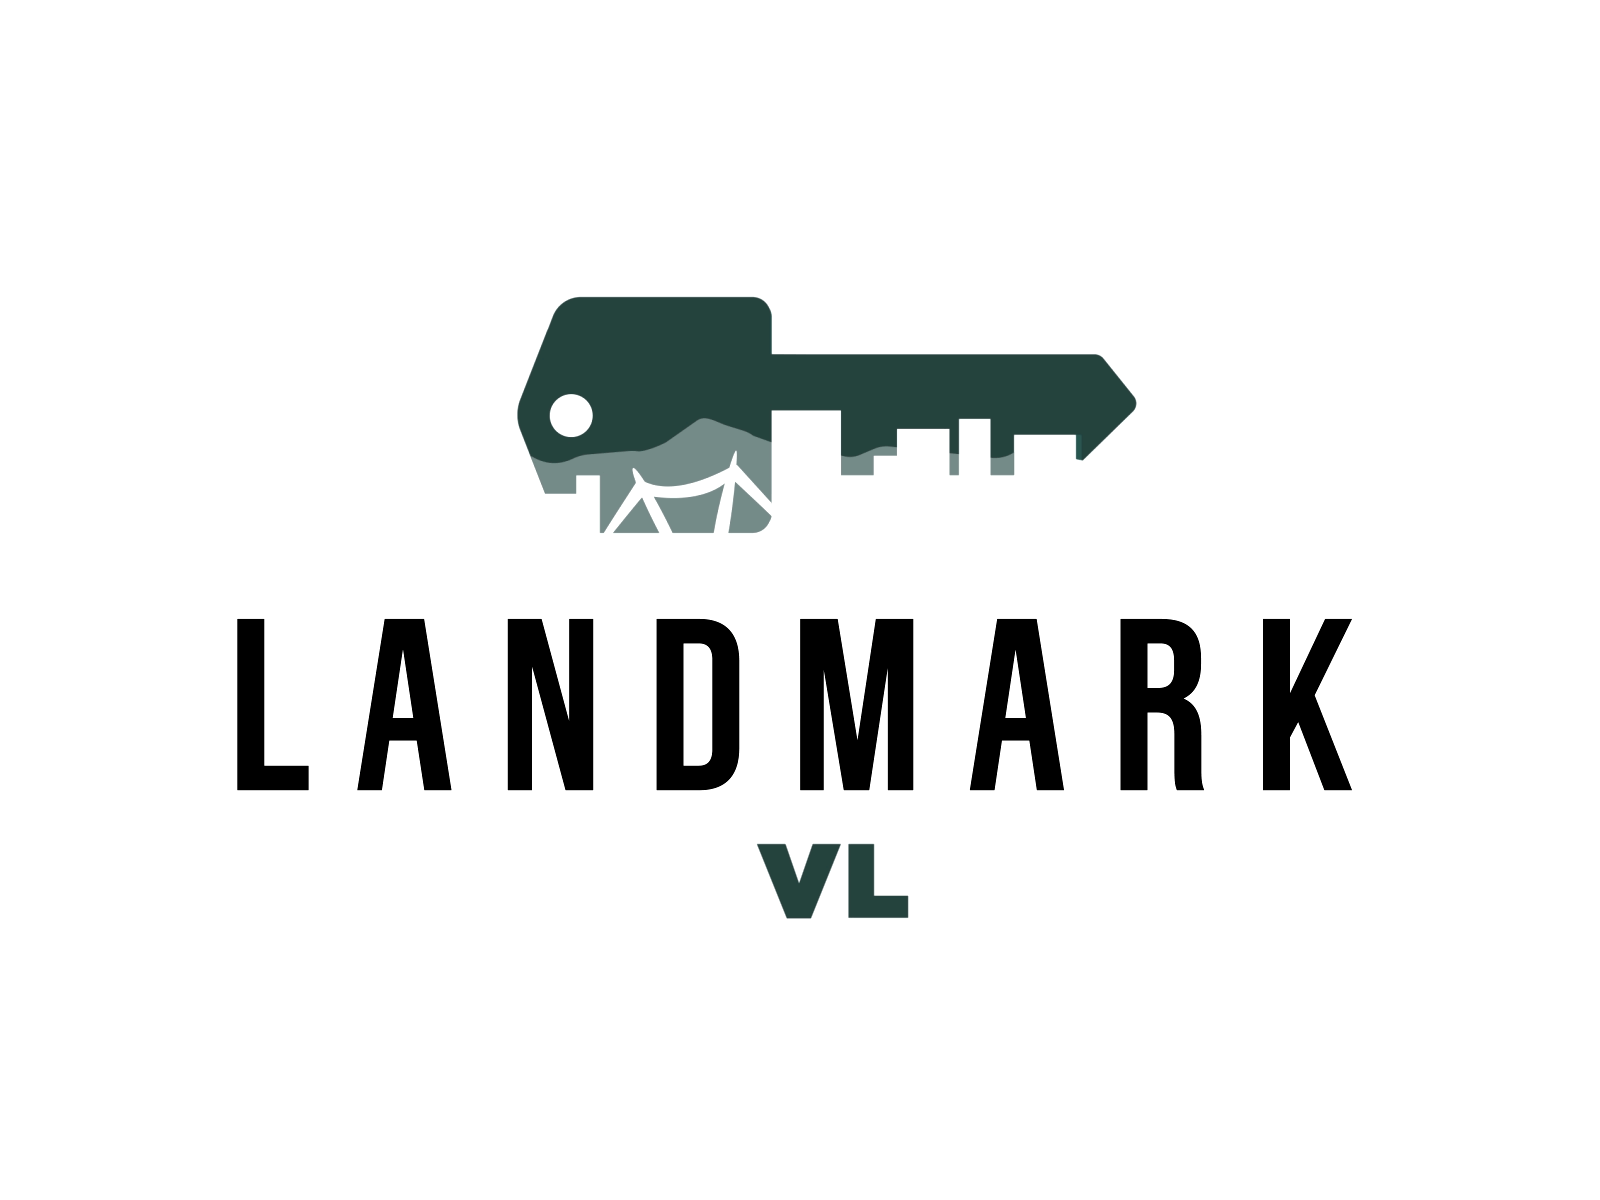 Landmark logo animation animation house key landmark logo animation motion graphics